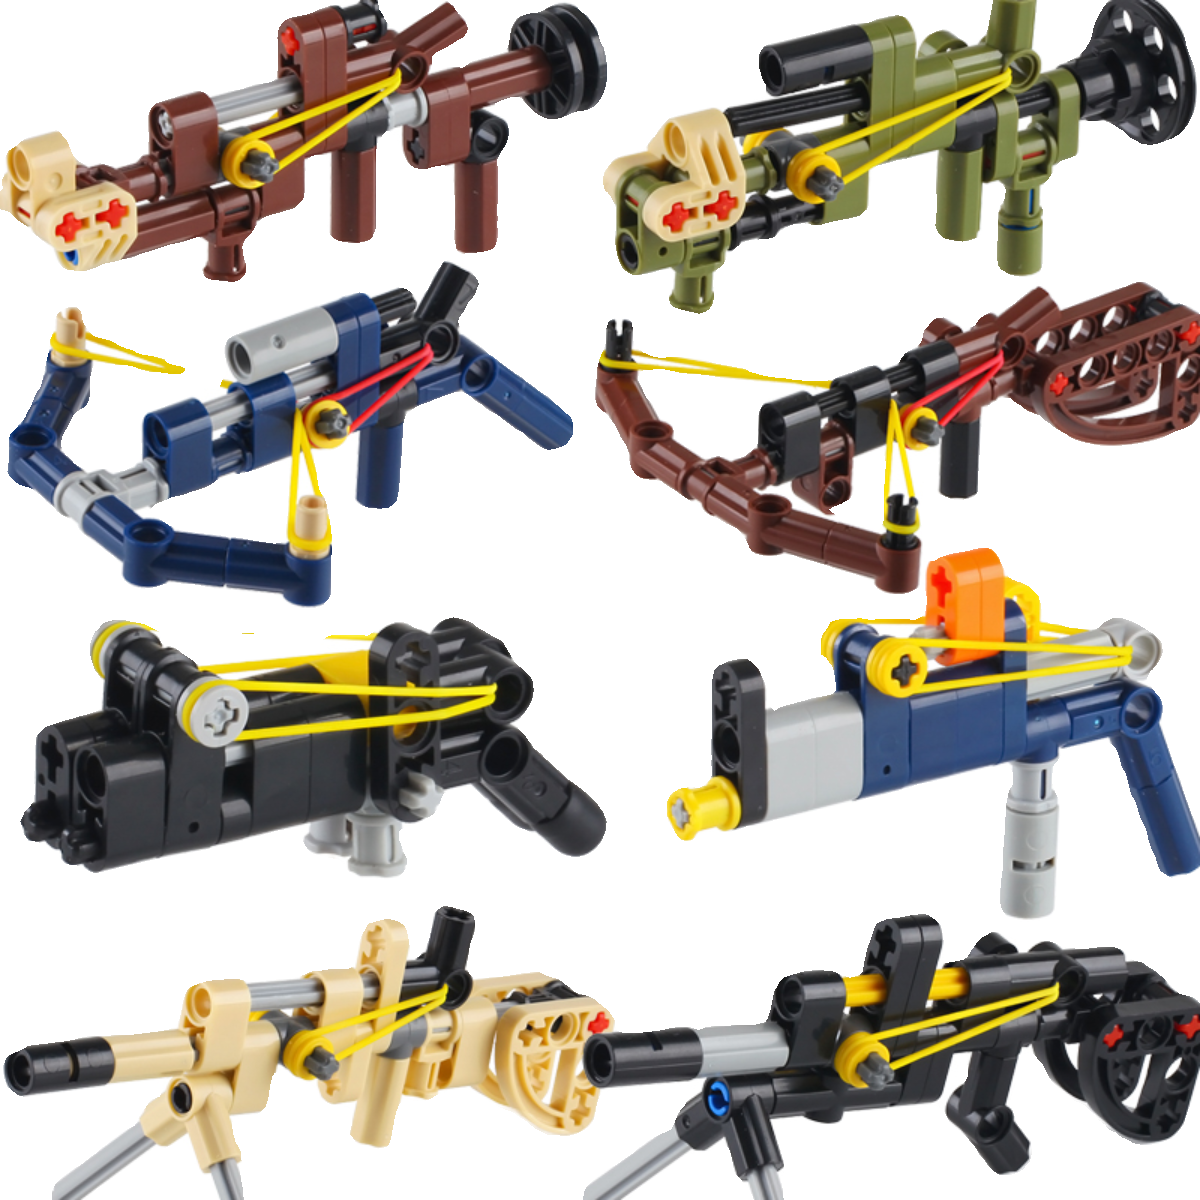 可发射皮筋冲锋枪机枪火箭筒弓箭男孩子益智拼装积木军事模型玩具 - 图3